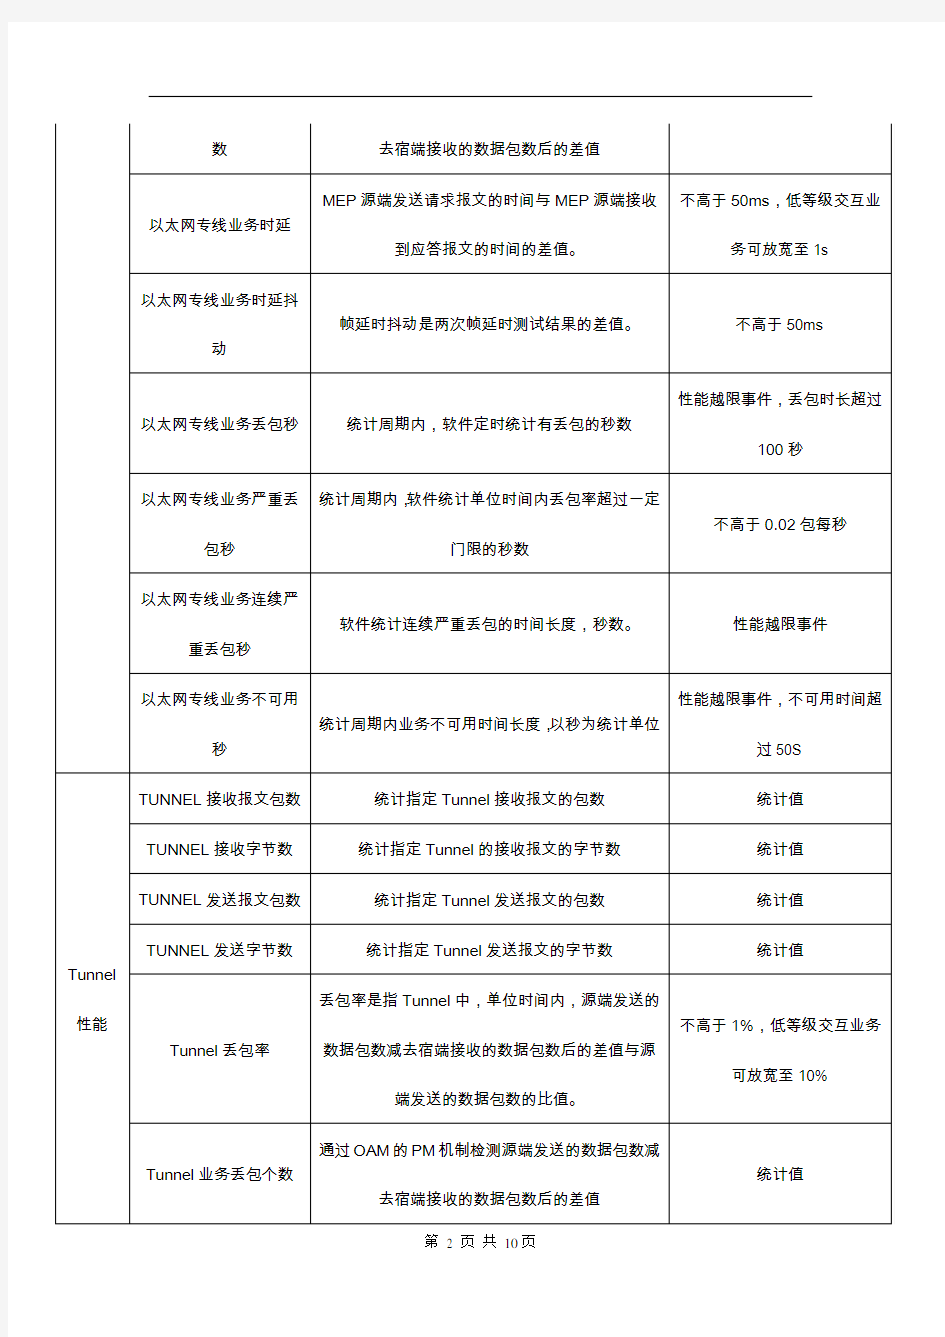 9-中国移动网络全业务指标体系